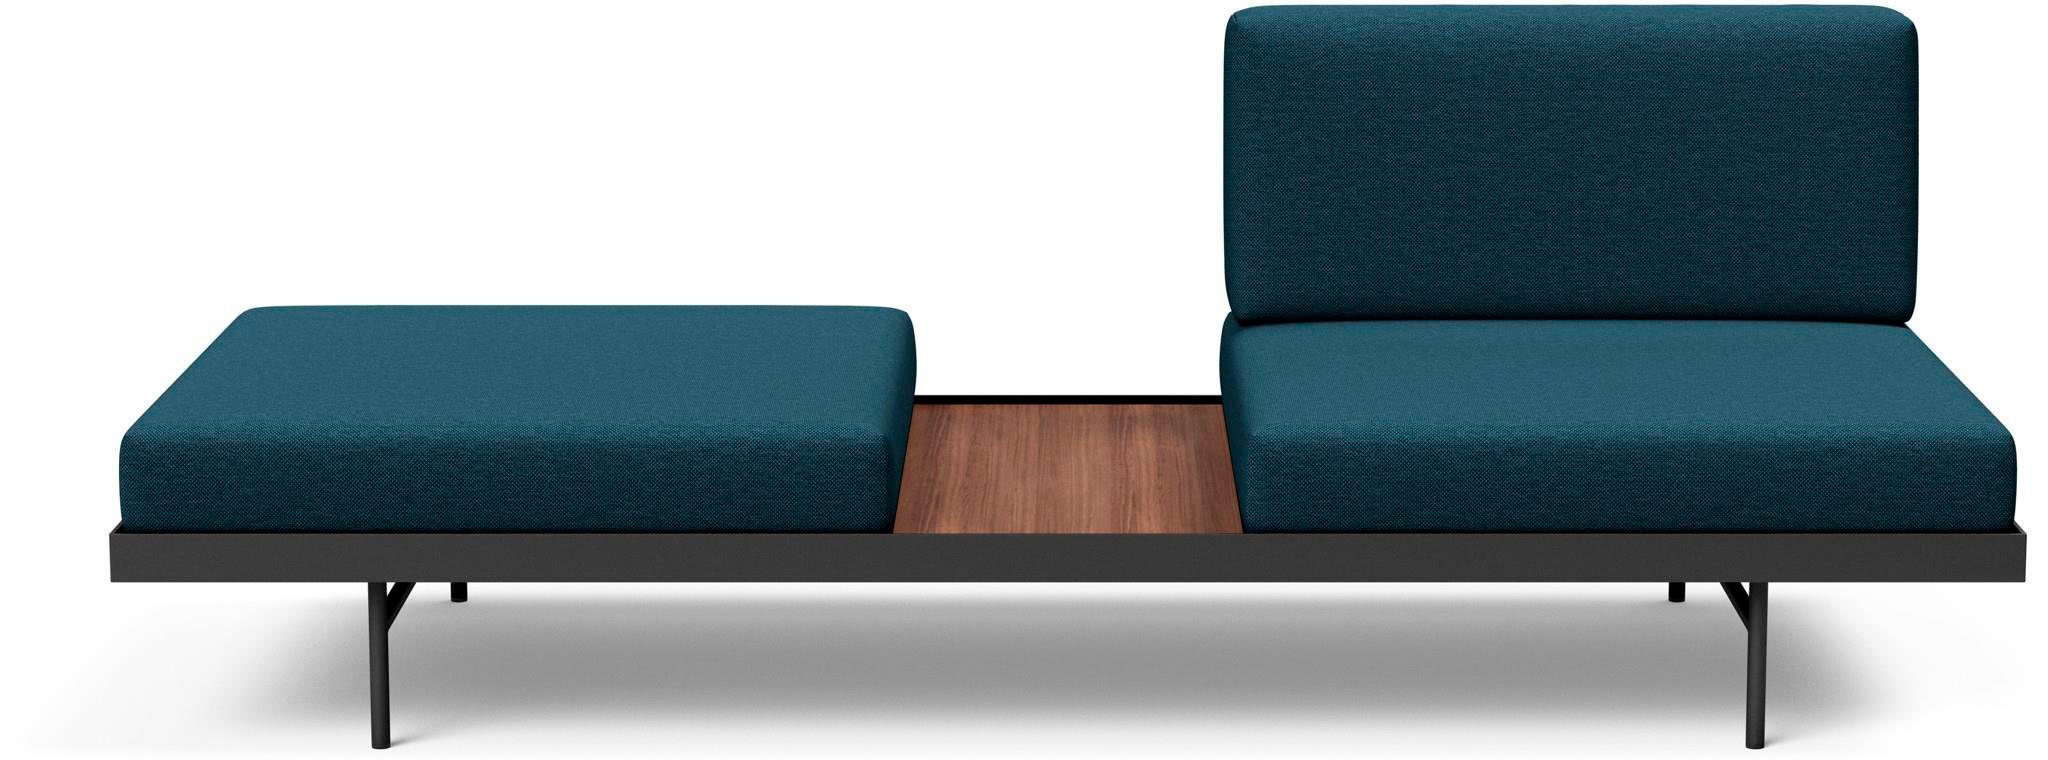 INNOVATION LIVING ™ Relaxliege PURI, Daybed mit integrierter Holzablage, flexible Aufteilung | Alle Sofas